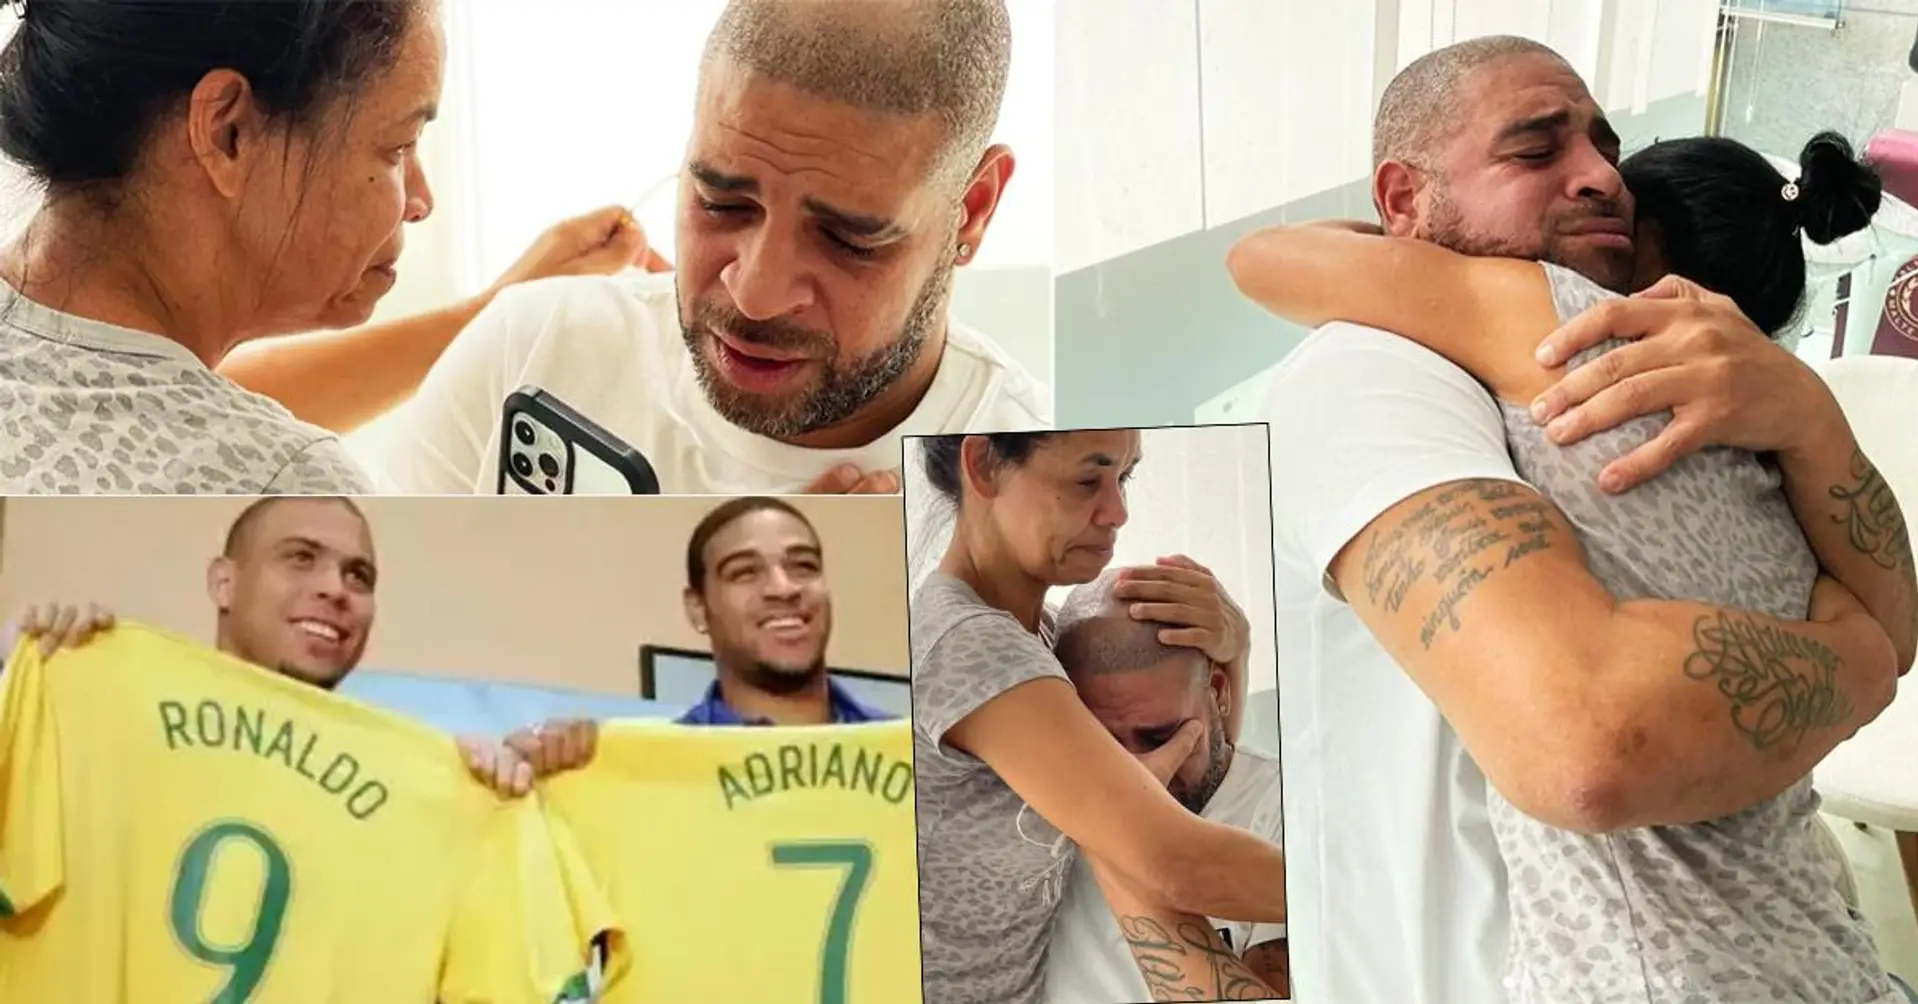 Brasilien-Legende Adriano weint vor den Kameras, nachdem er erfahren hat, dass er in den Maracana-"Walk of Fame" aufgenommen wird